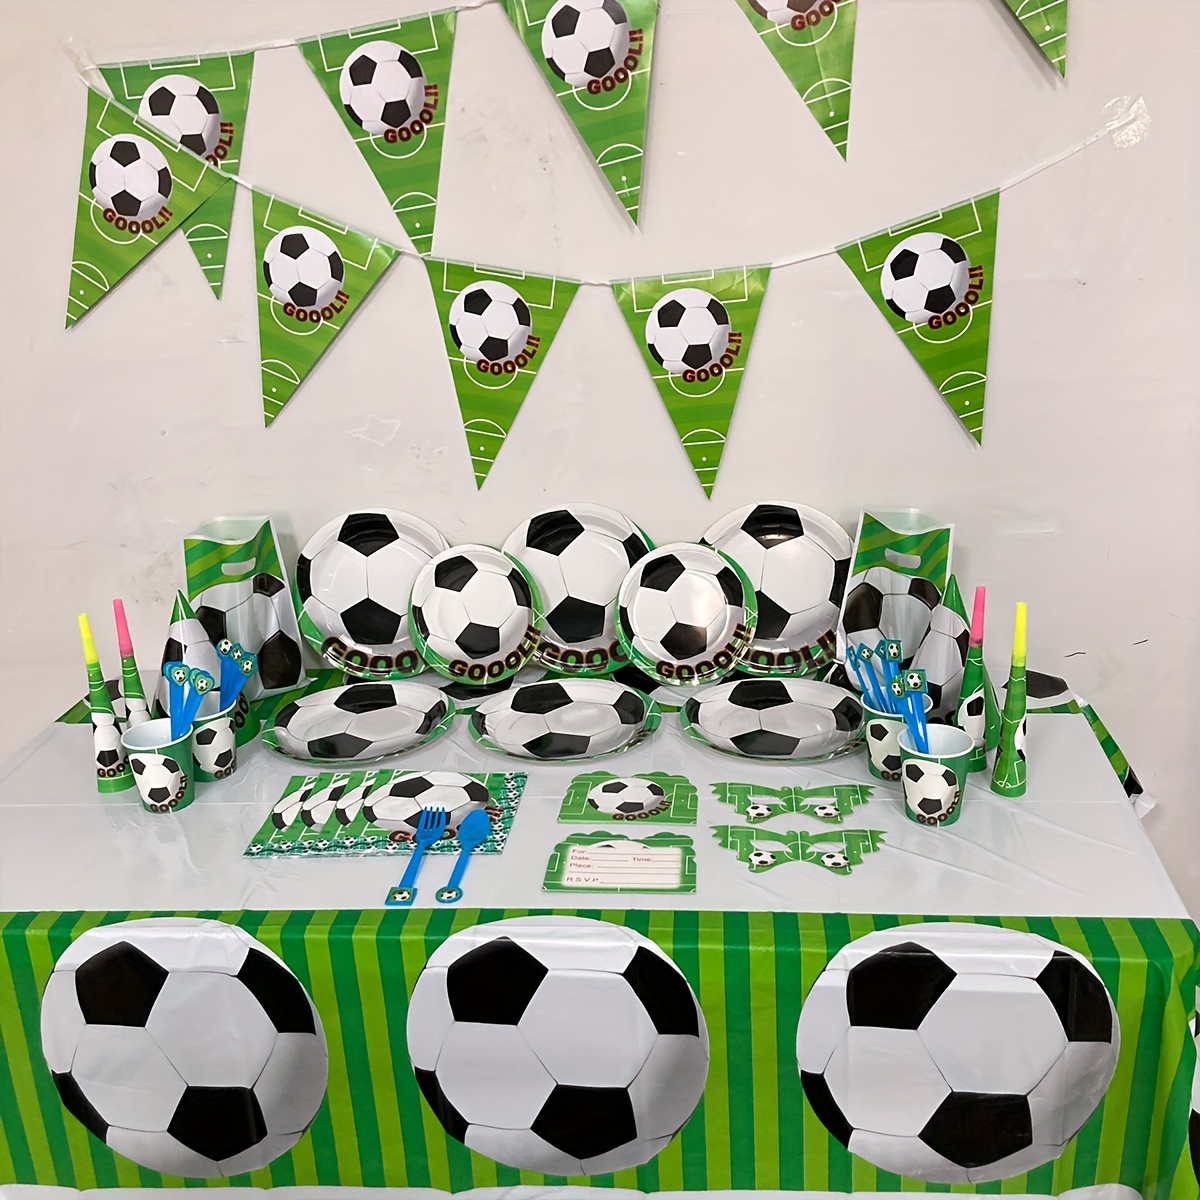 32 piezas de decoración de pastel de fútbol, jugador de pelota de fútbol,  decoración de pasteles para fútbol, temática de fútbol, suministros de